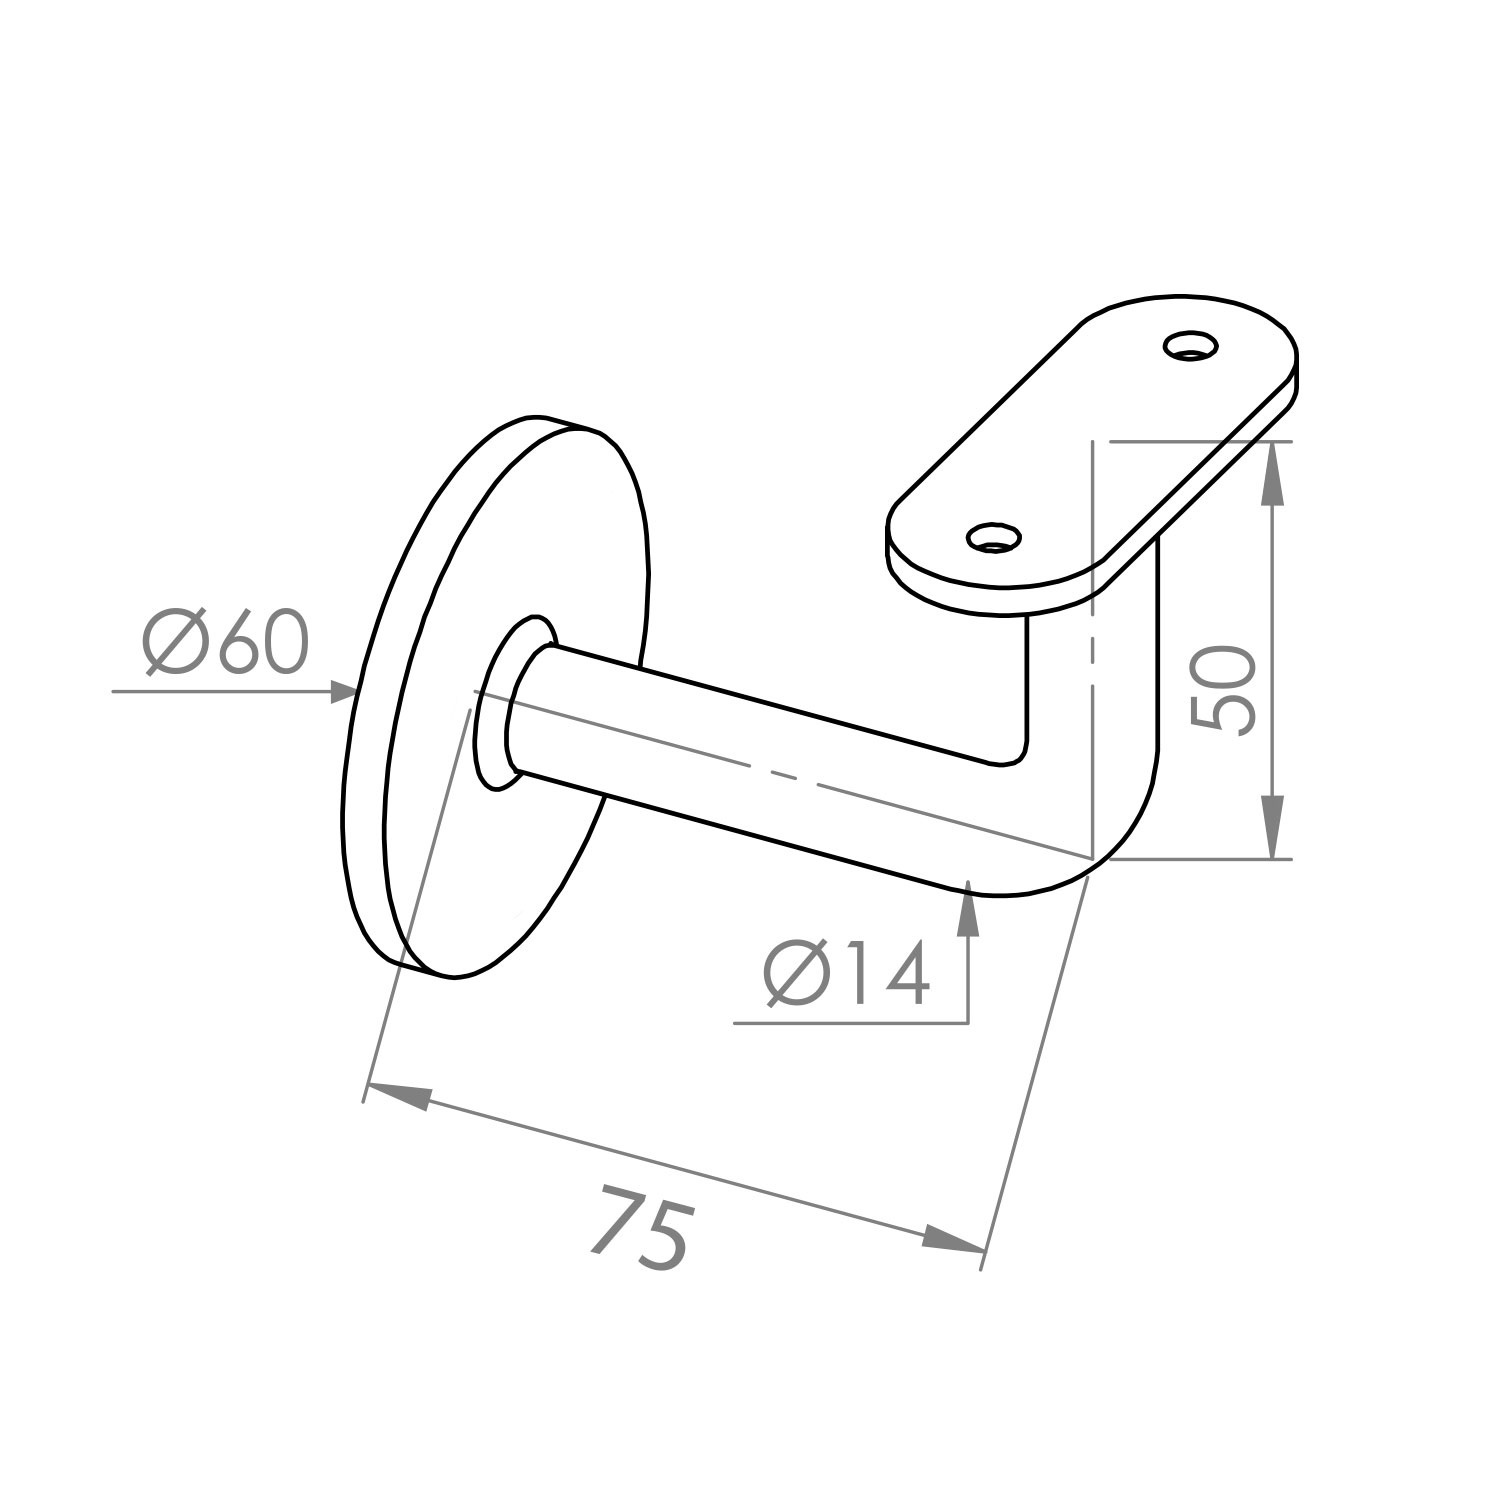  Handlaufhalter Hammerschlag Optik beschichtet Type 3 viereckig - Rechteckige Handlauf Halterung - Handlaufträger mit grauem Hammerschlag Pulverbeschichtung